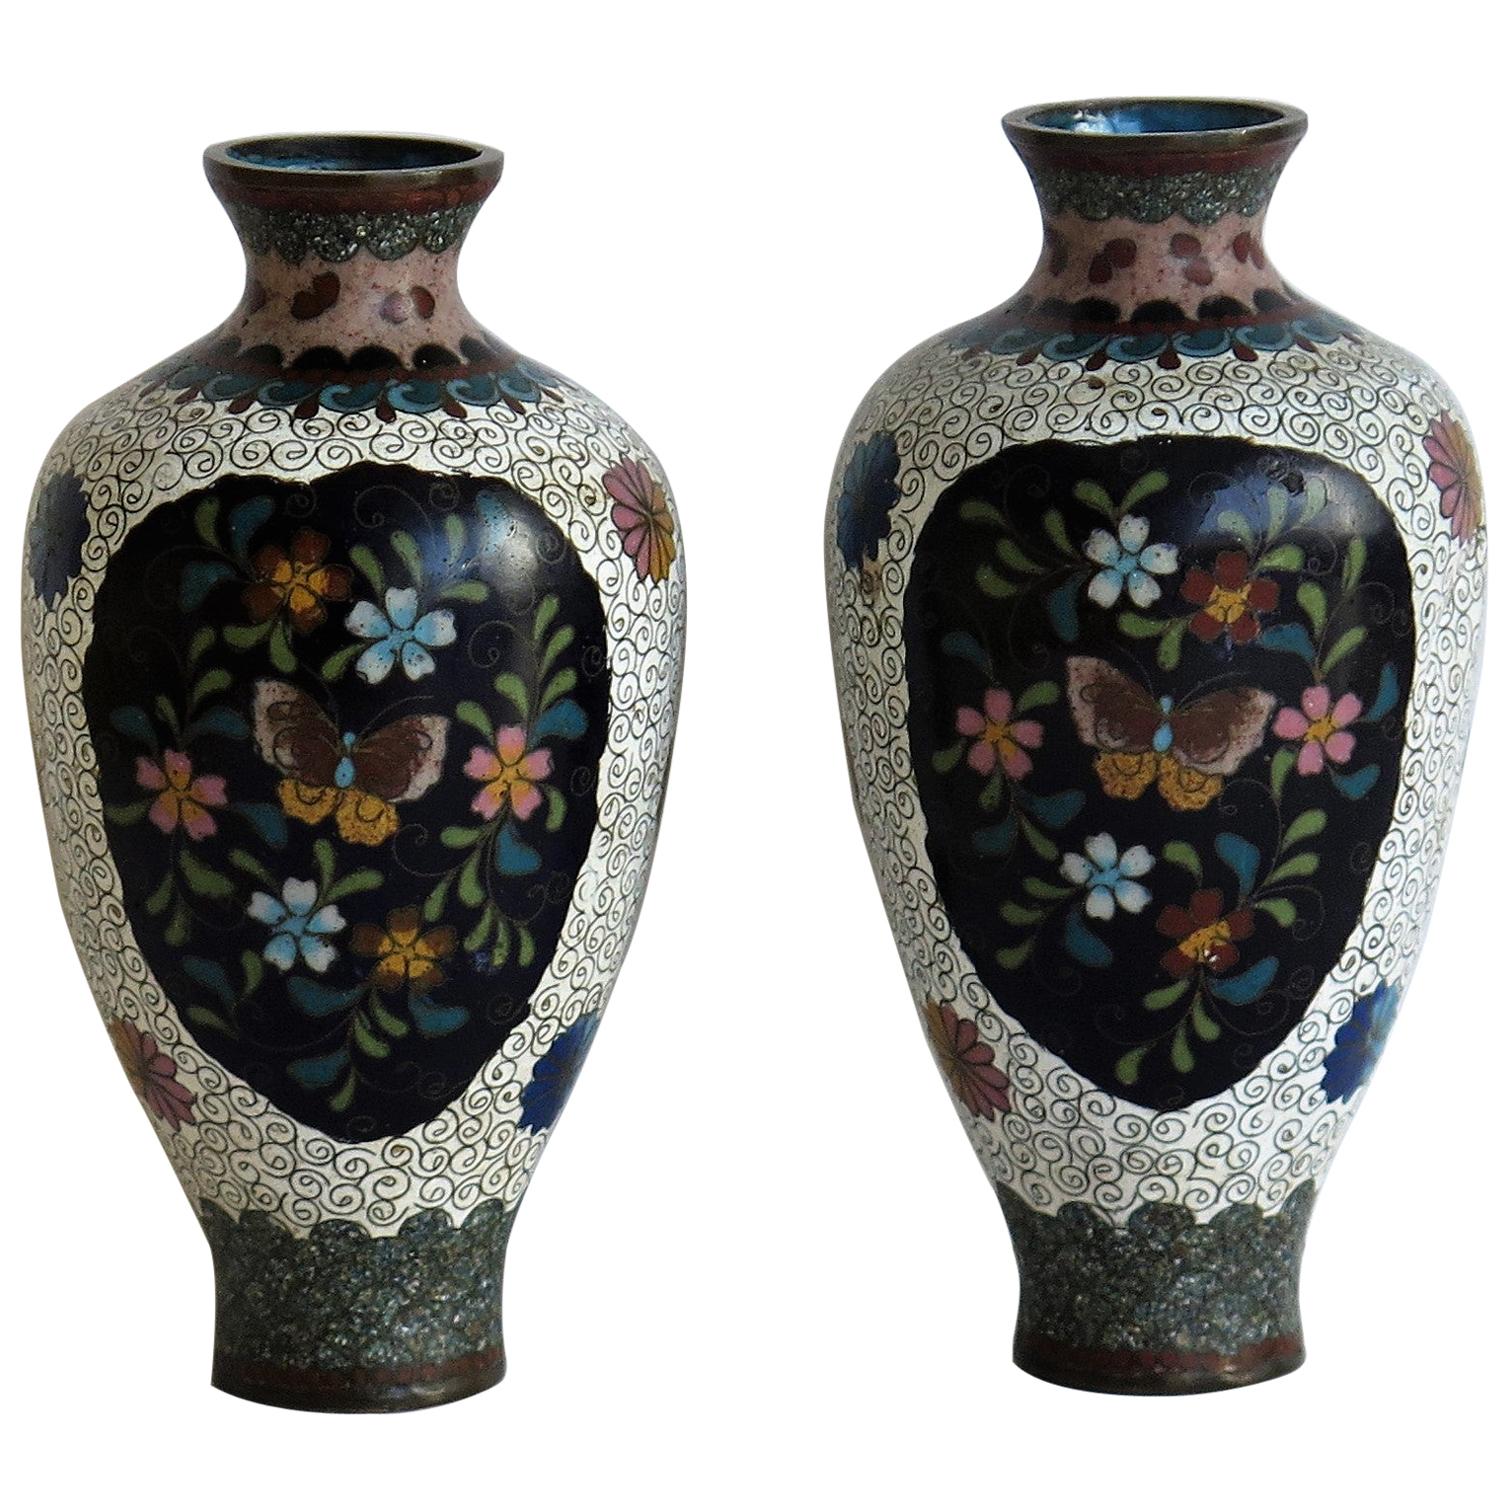 Japanese Cloisonné Vases Butterflies & Flowers, 19th Century Meiji Period, Pair For Sale